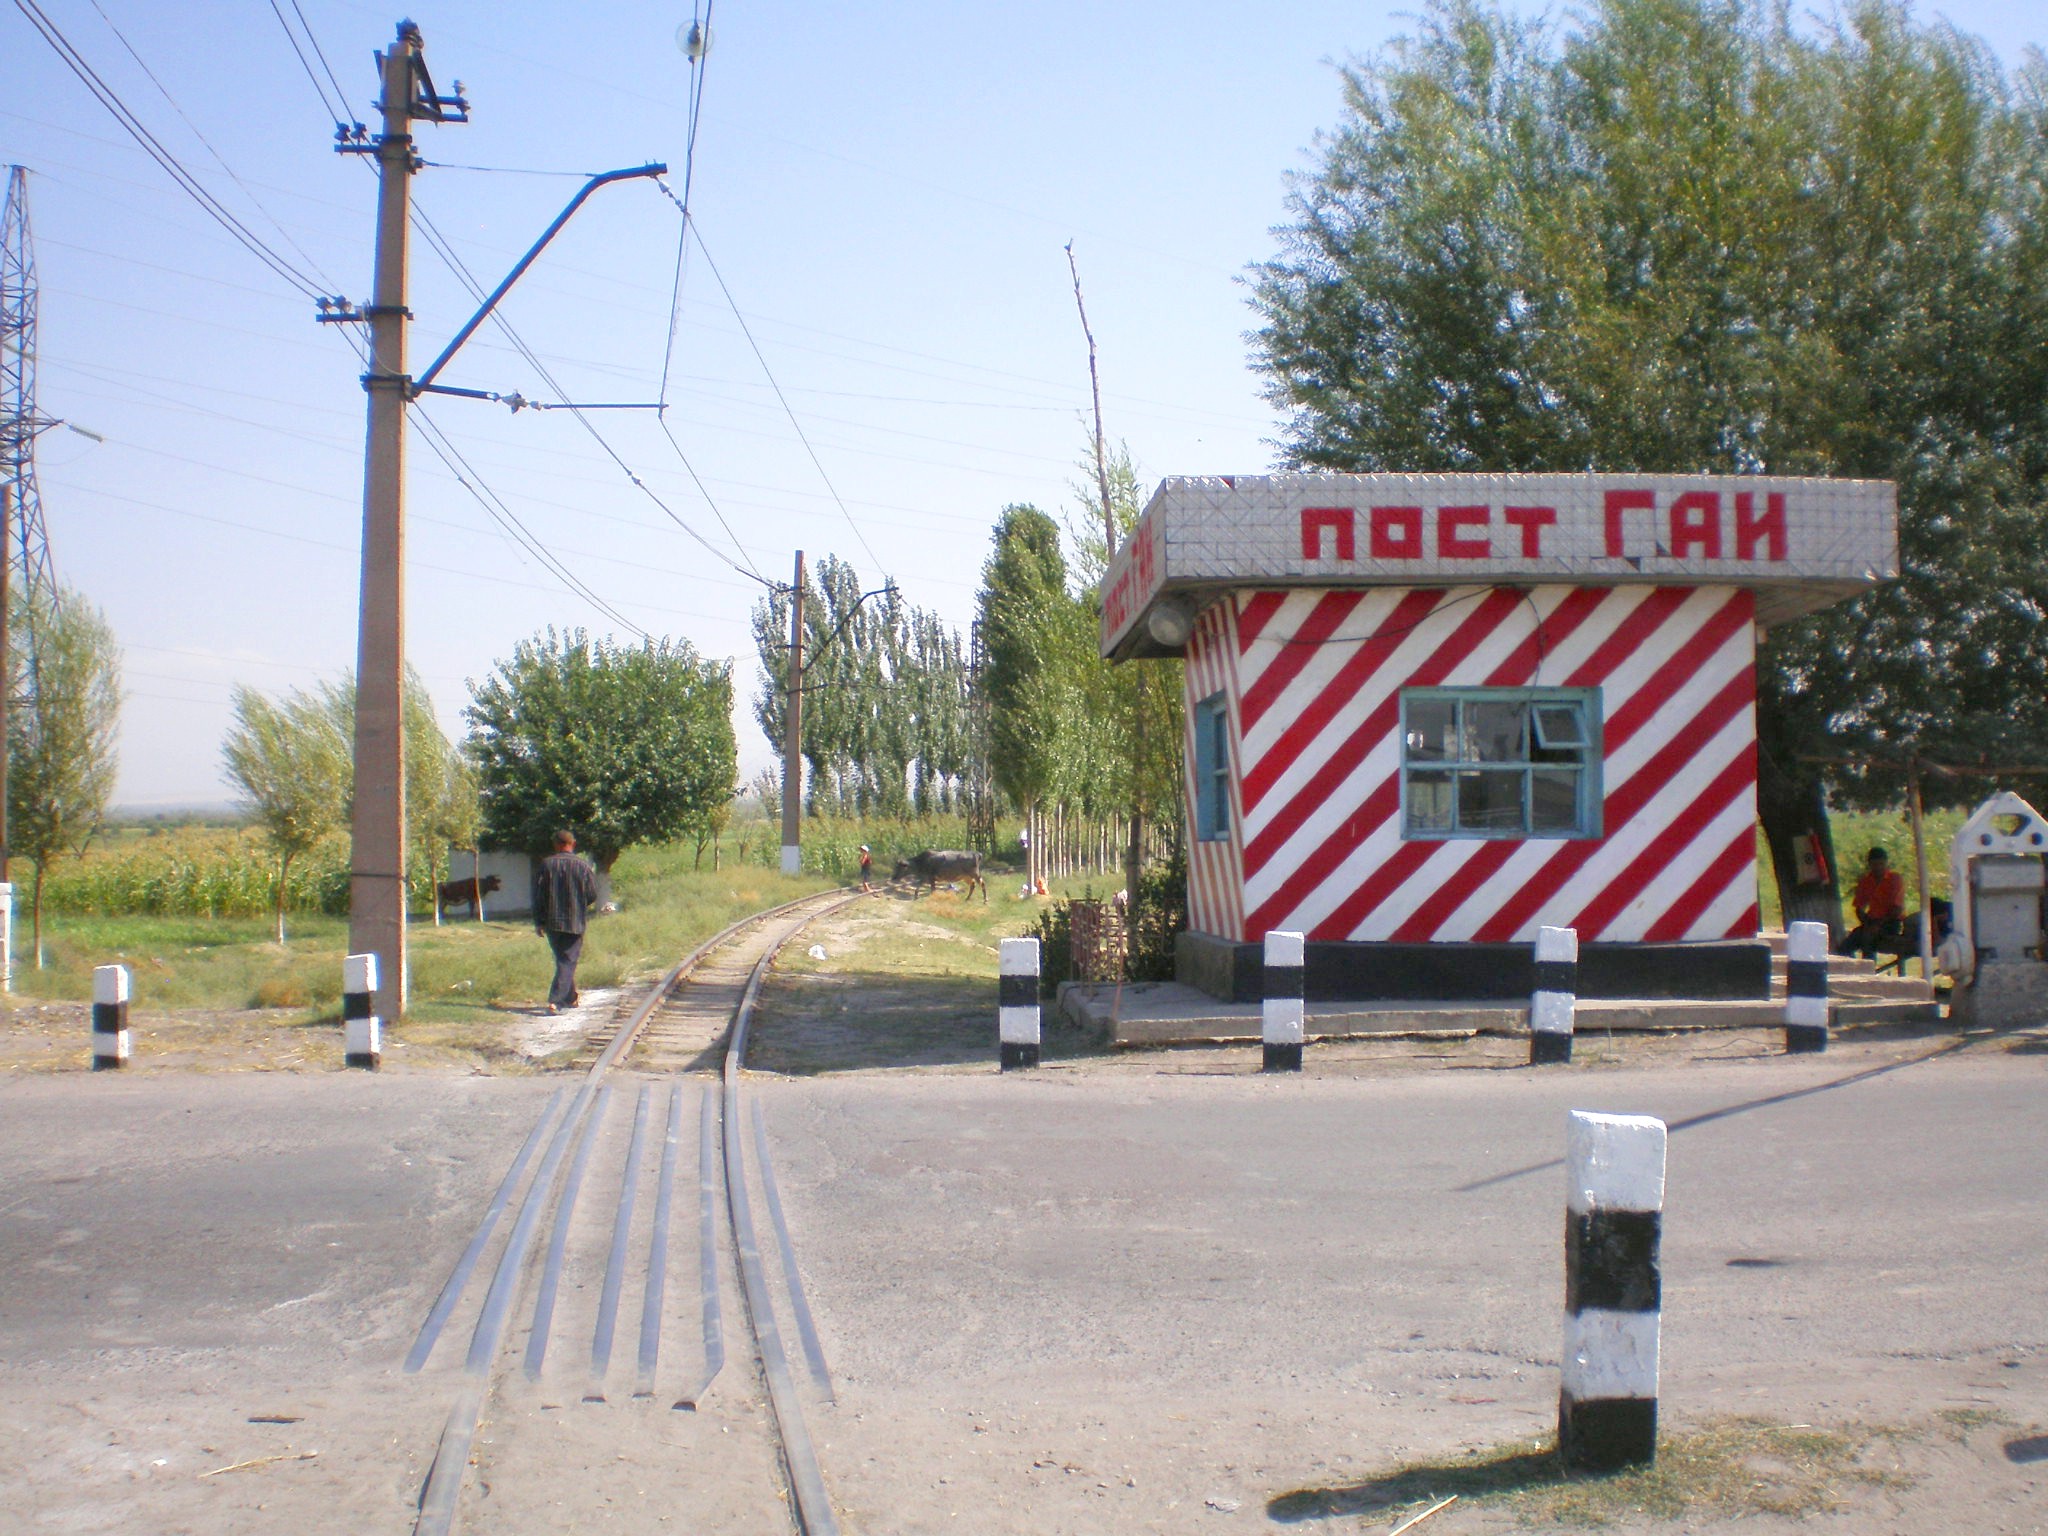 Сулюктинская узкоколейная железная дорога  —  фотографии, сделанные в 2008 году (часть 17)